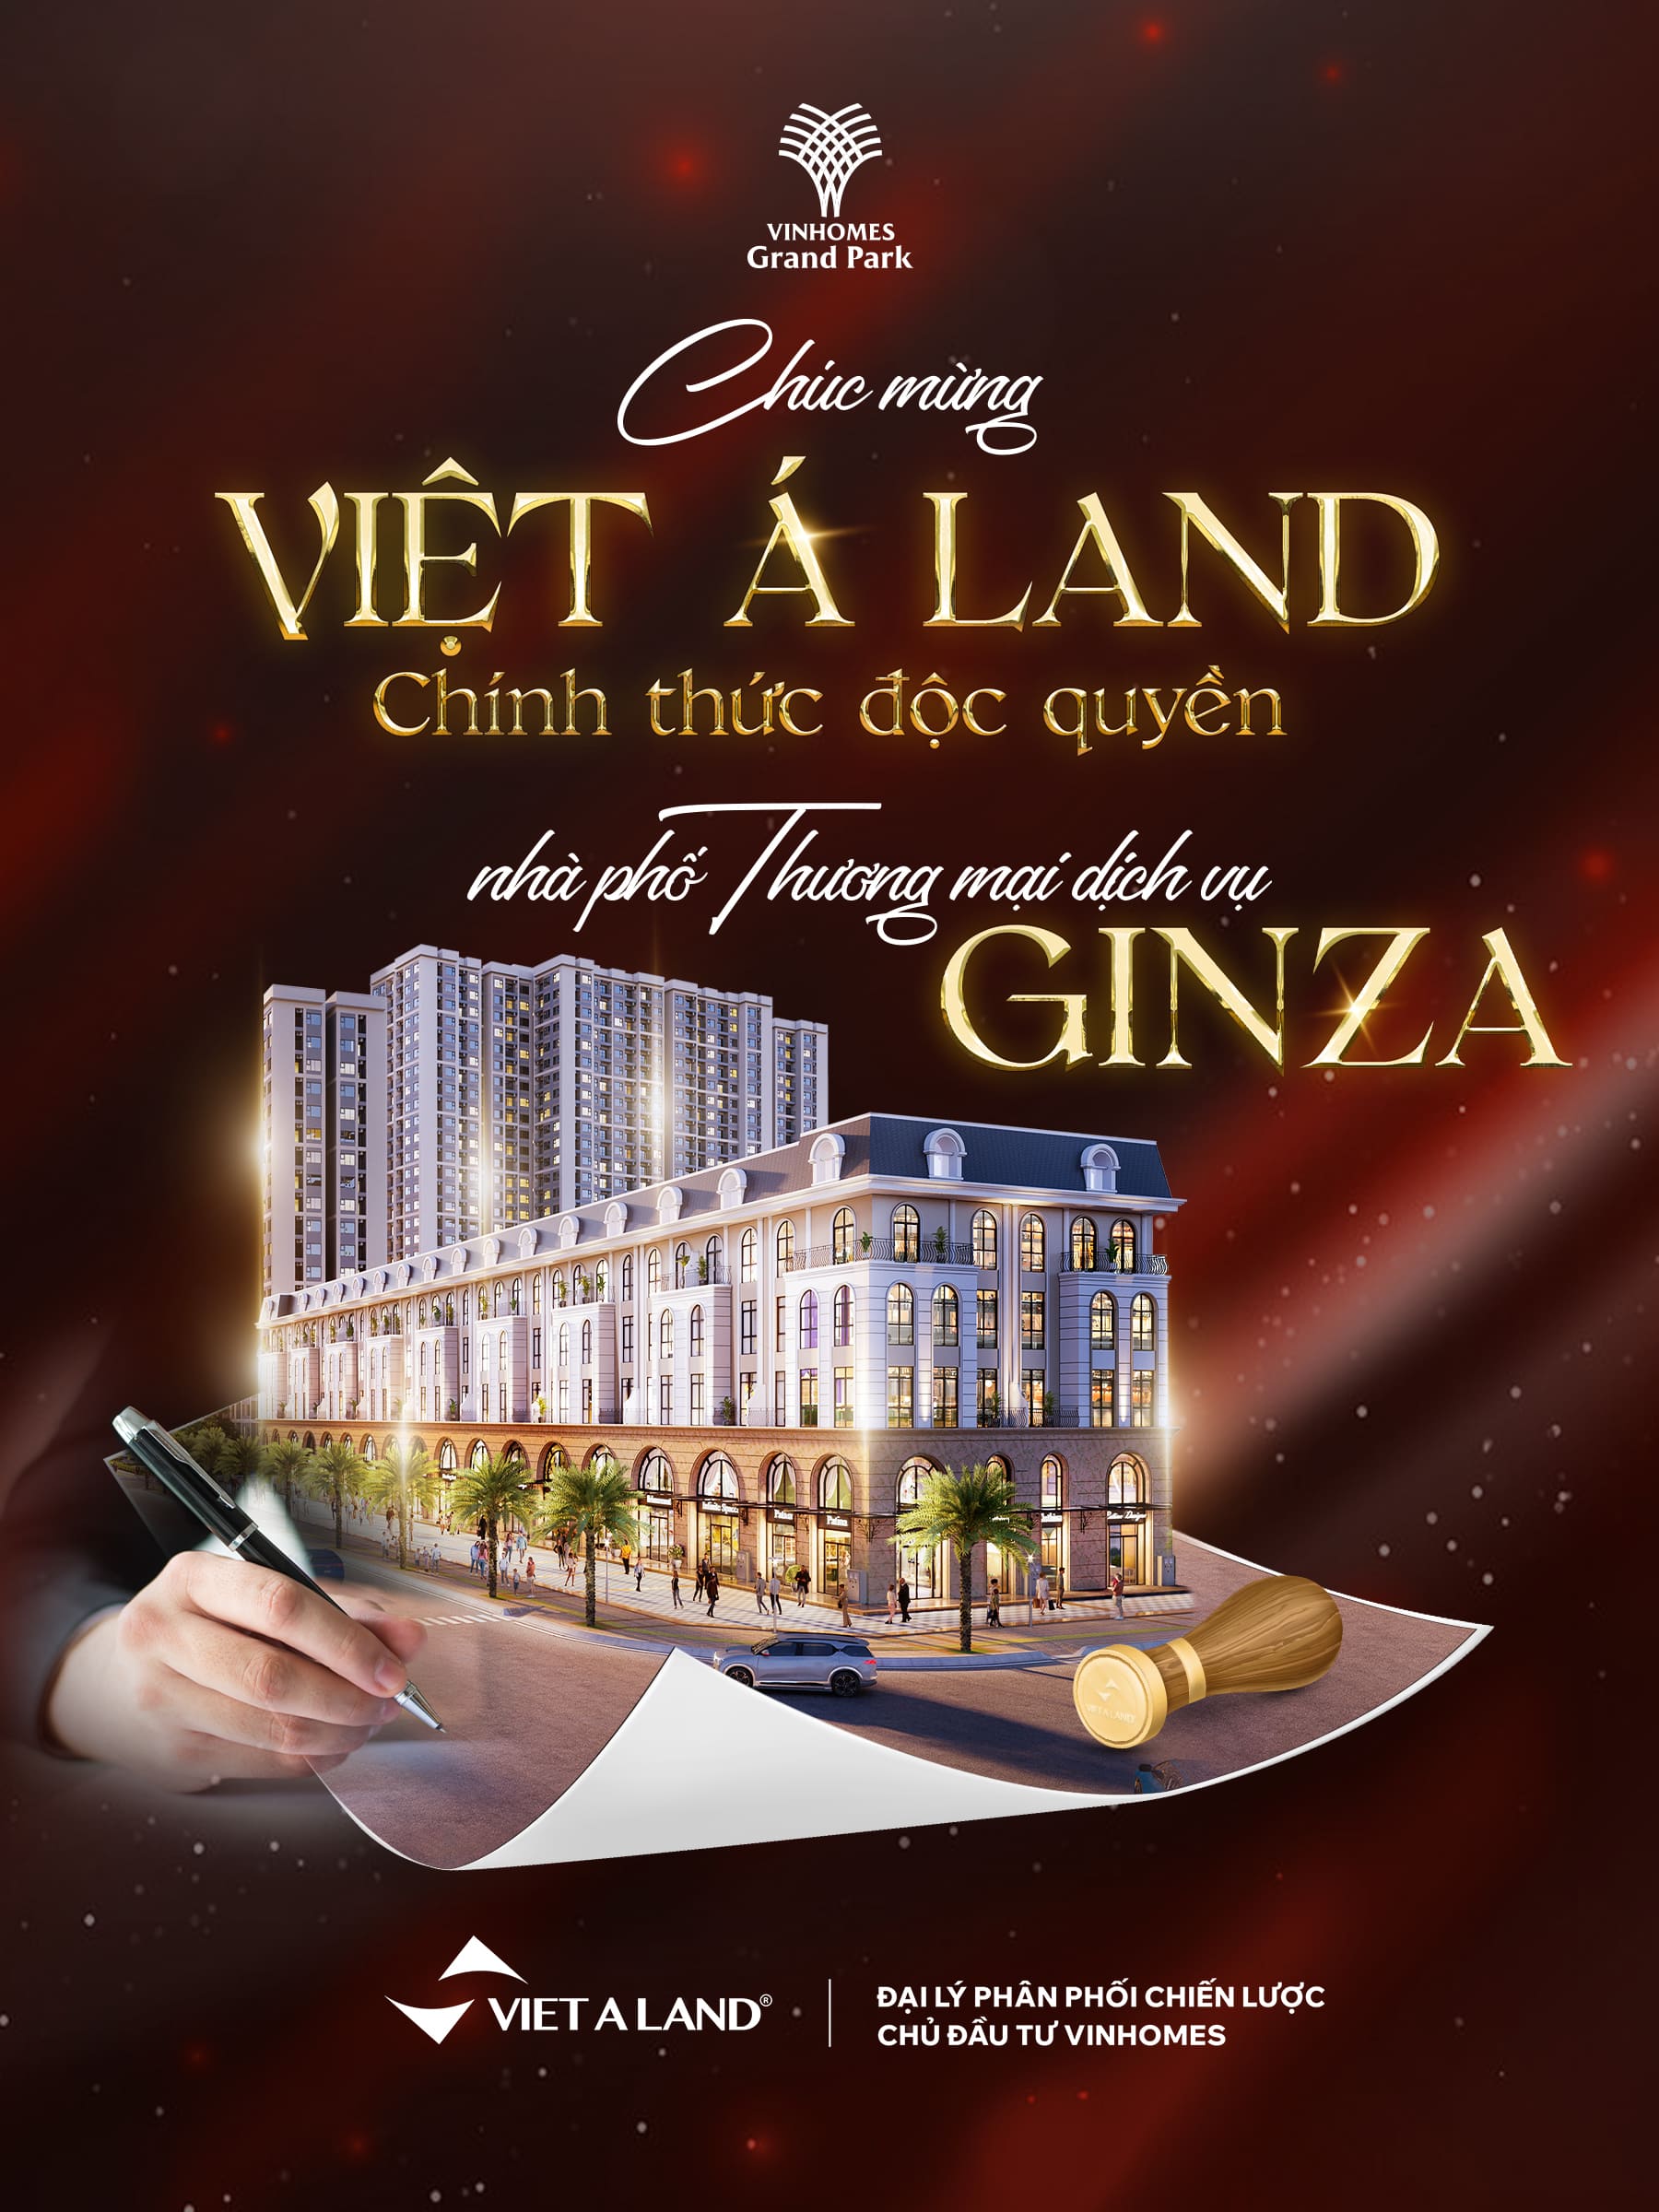 Việt Á Land độc quyền khu shop TMDV Ginza tại Vinhomes Grand Park 